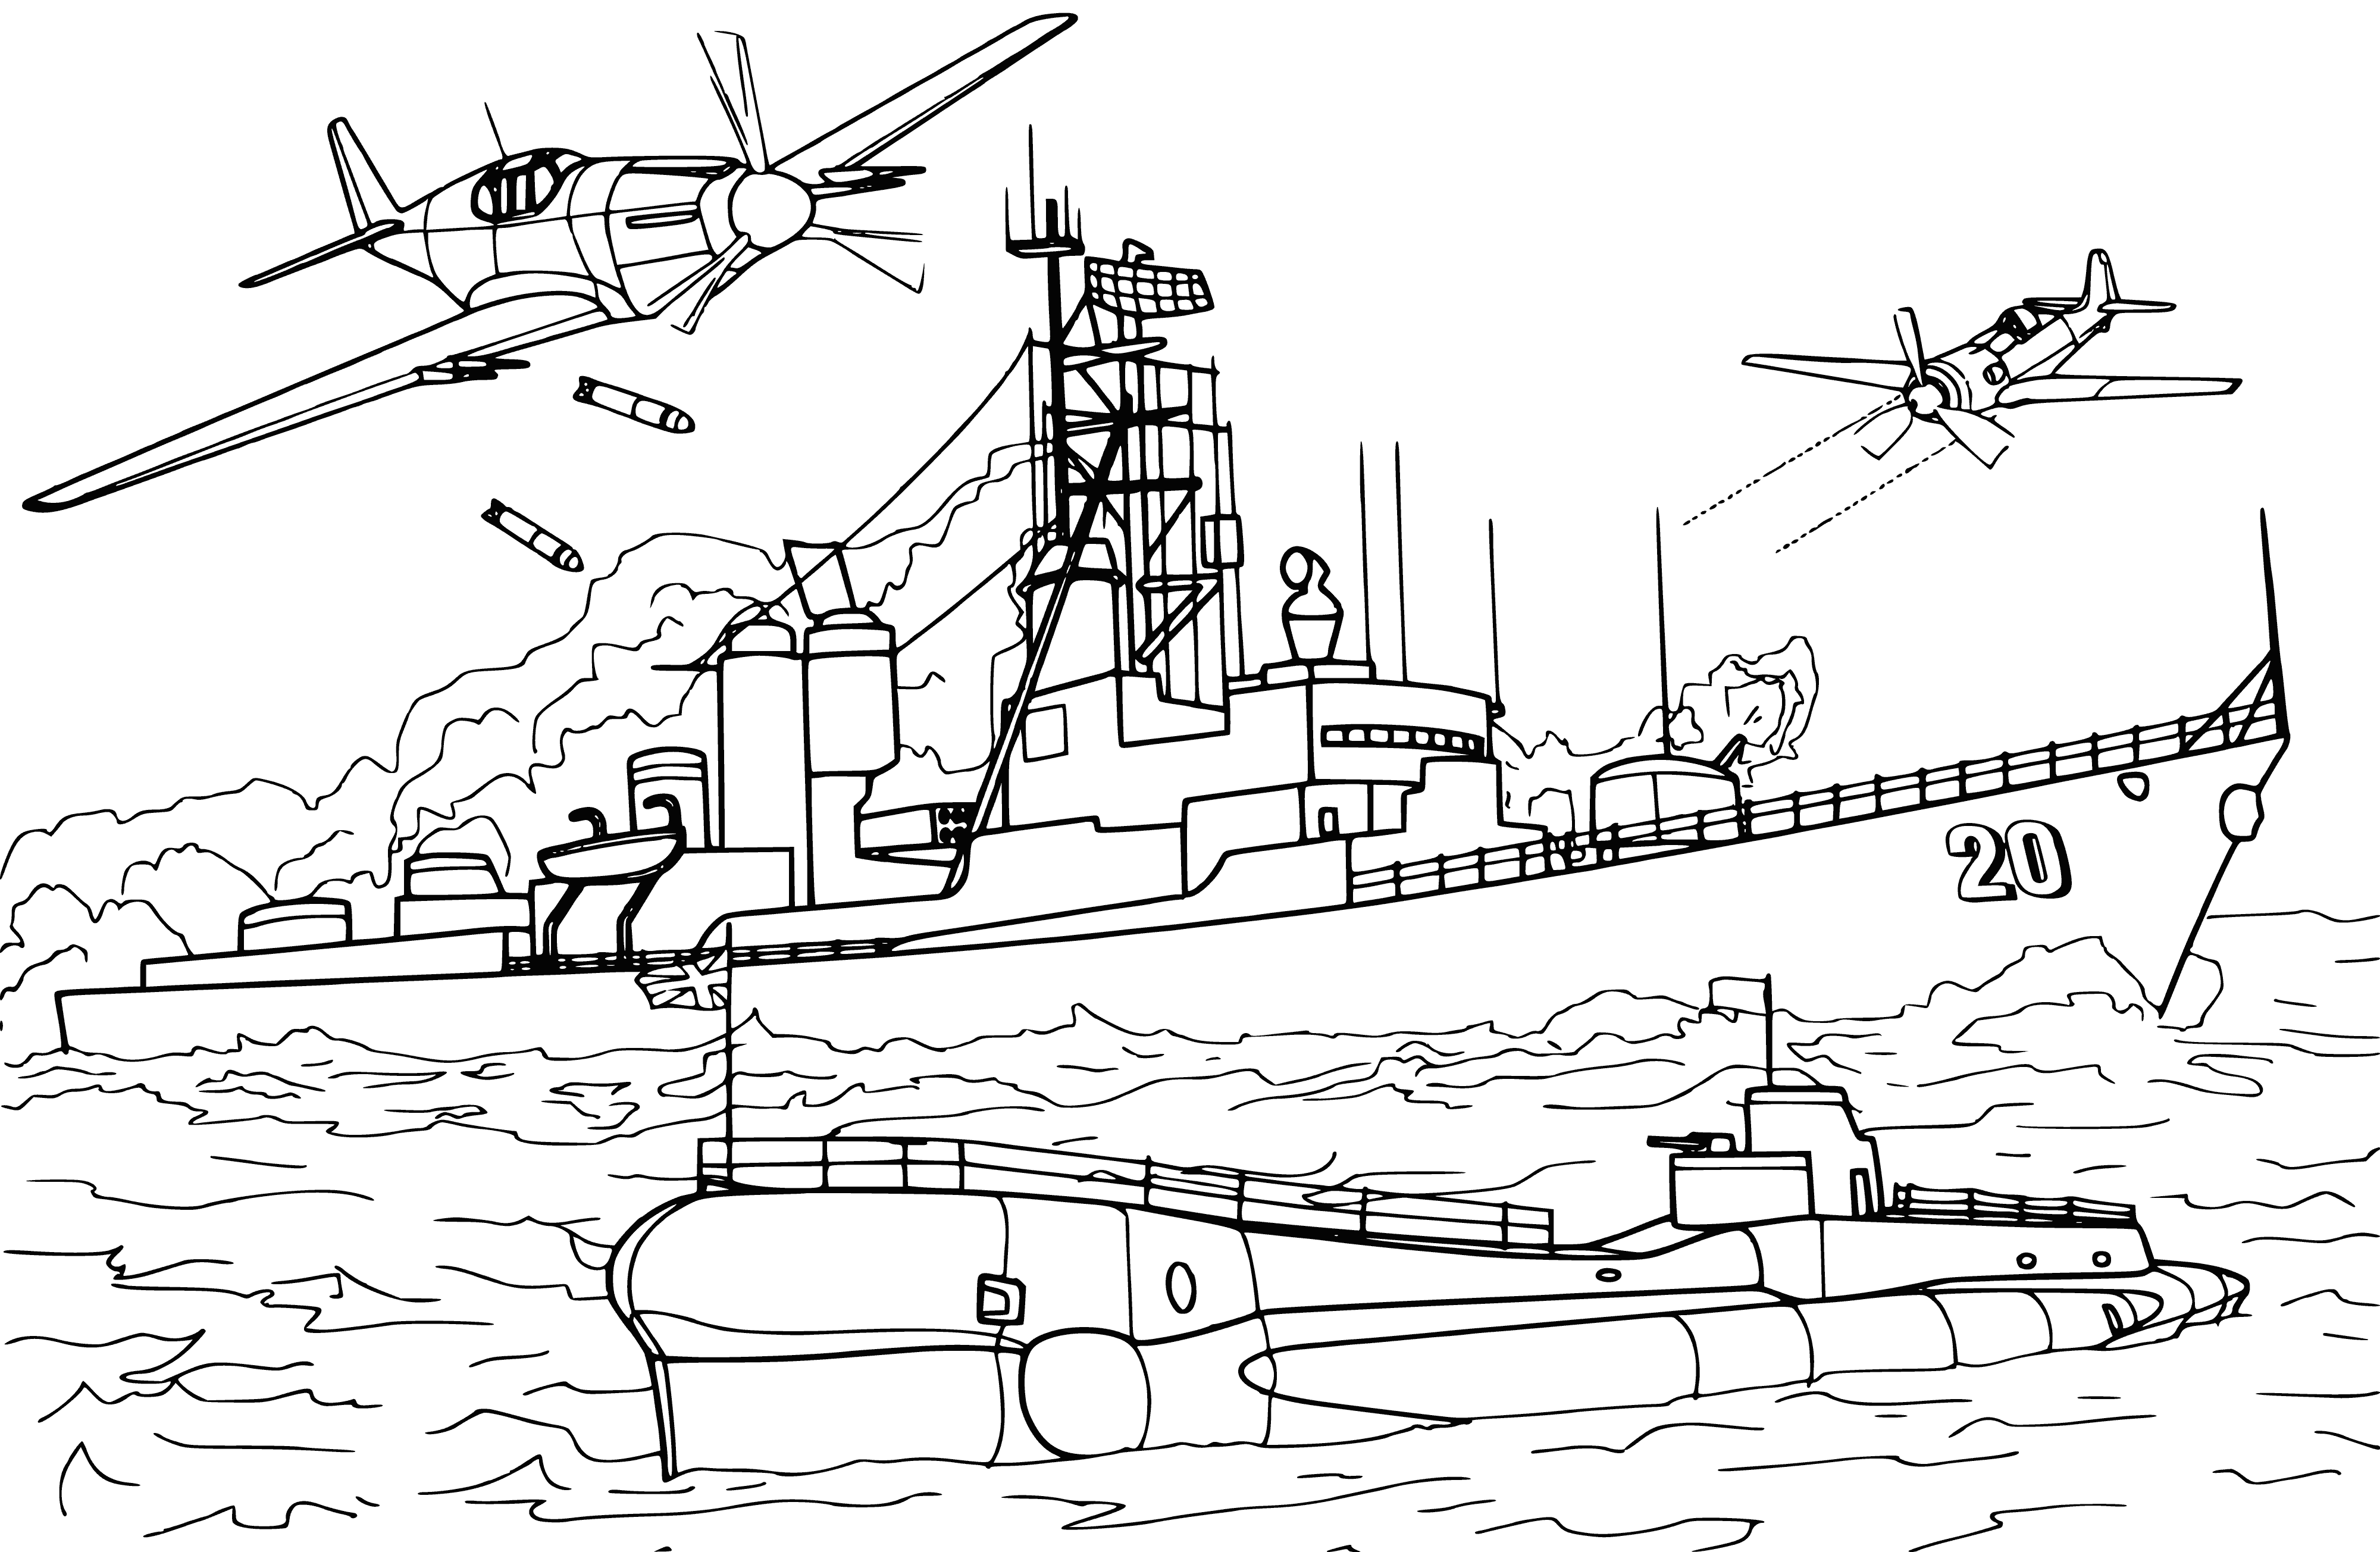 ABD destroyeri boyama sayfası